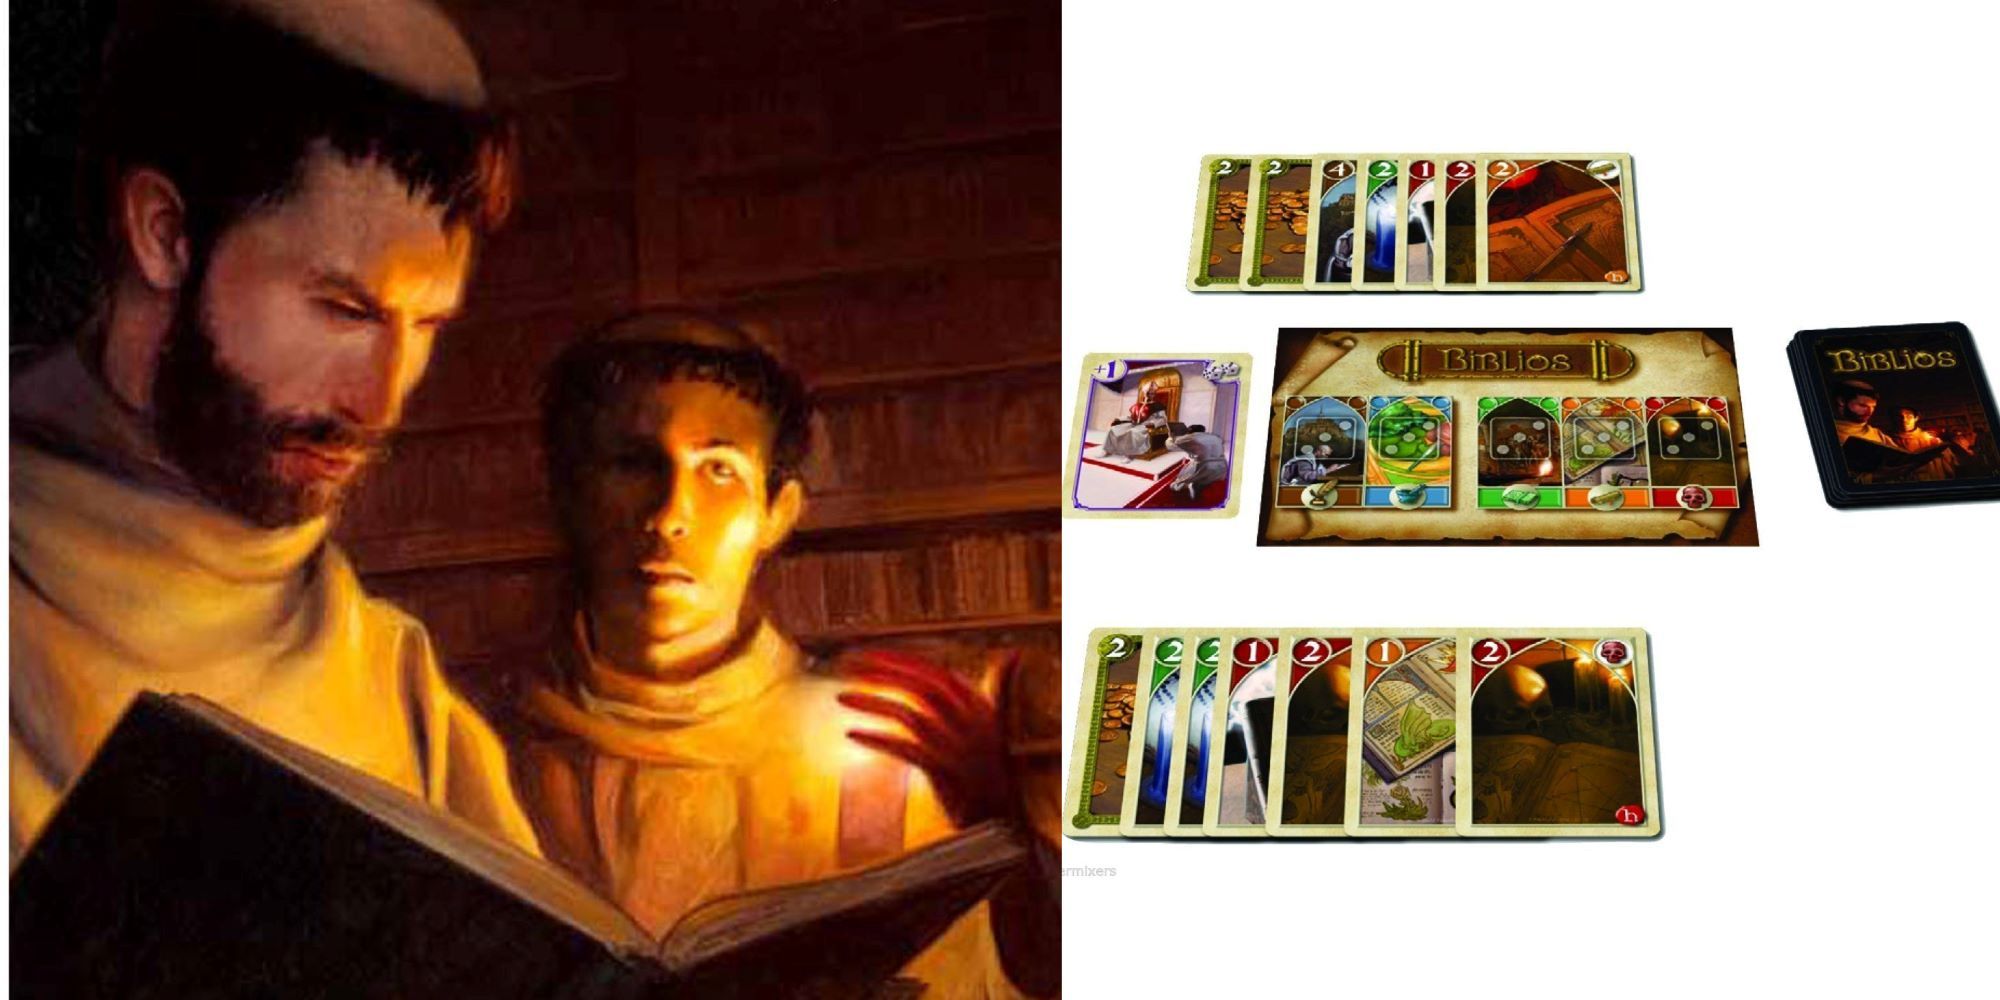 Изображение справа — монахи в монастырской библиотеке, изображение слева — настольная игра Biblios